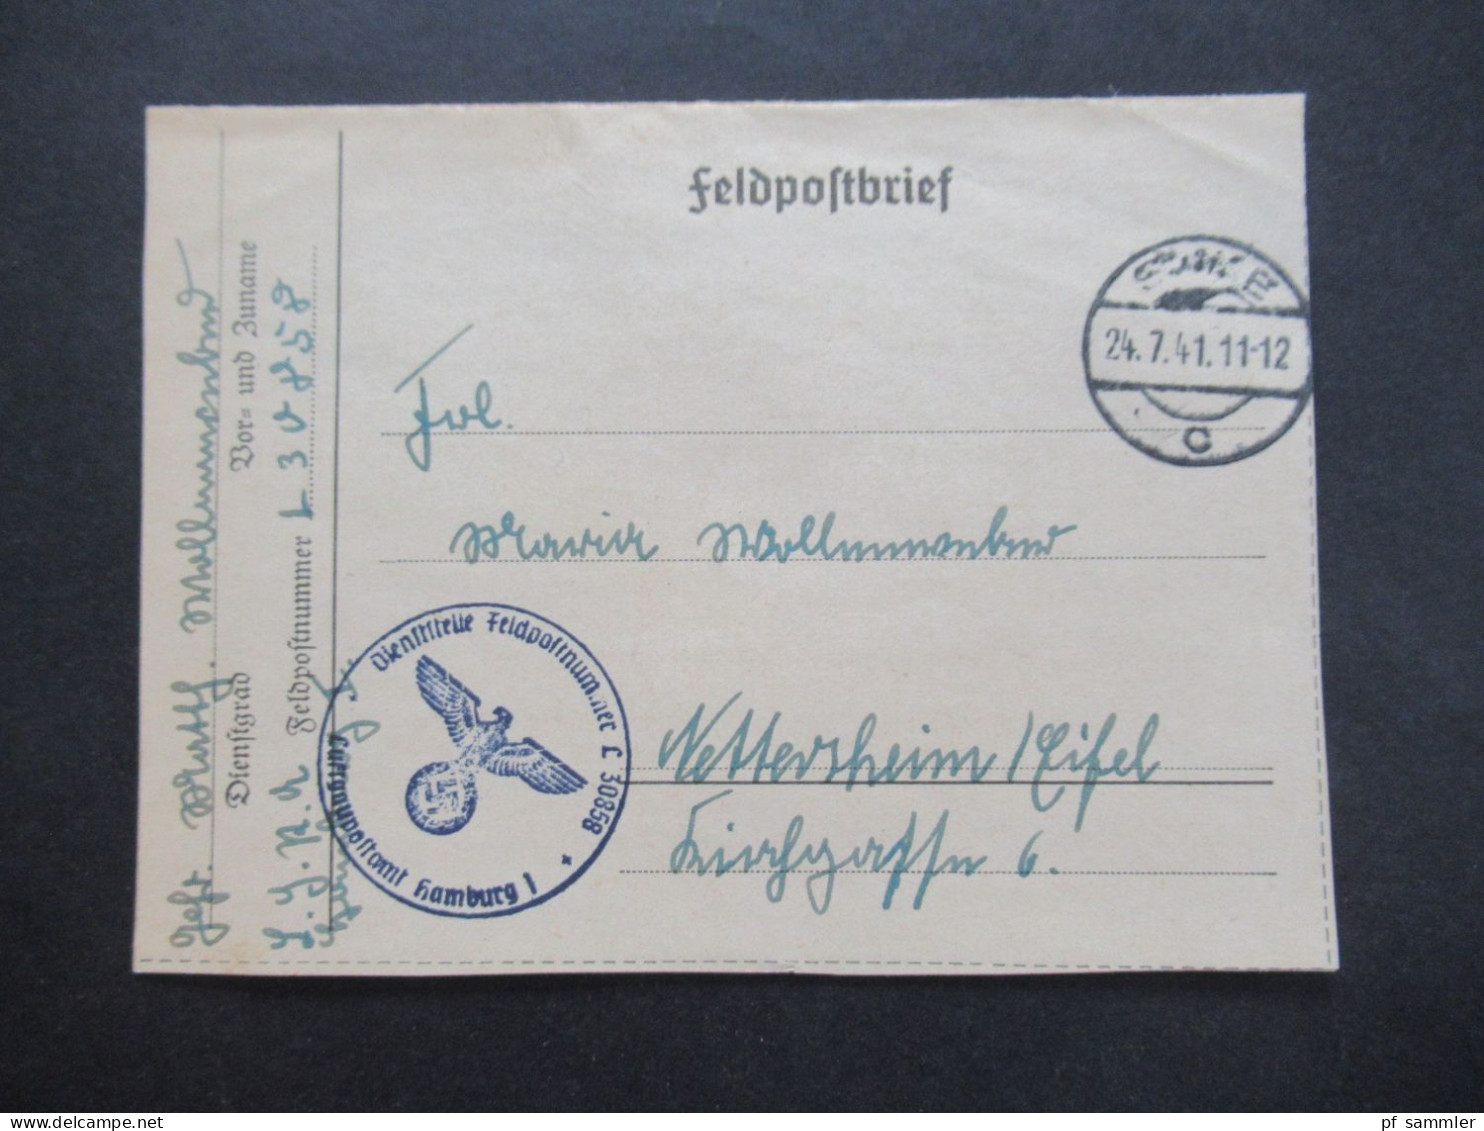 Feldpost 2.WK Posten mit vielen Belegen und 4 Fotos! 24.12.1939 - 22.6.1944 Luftwaffe / Luftgaupostämter / Fliegerhorst